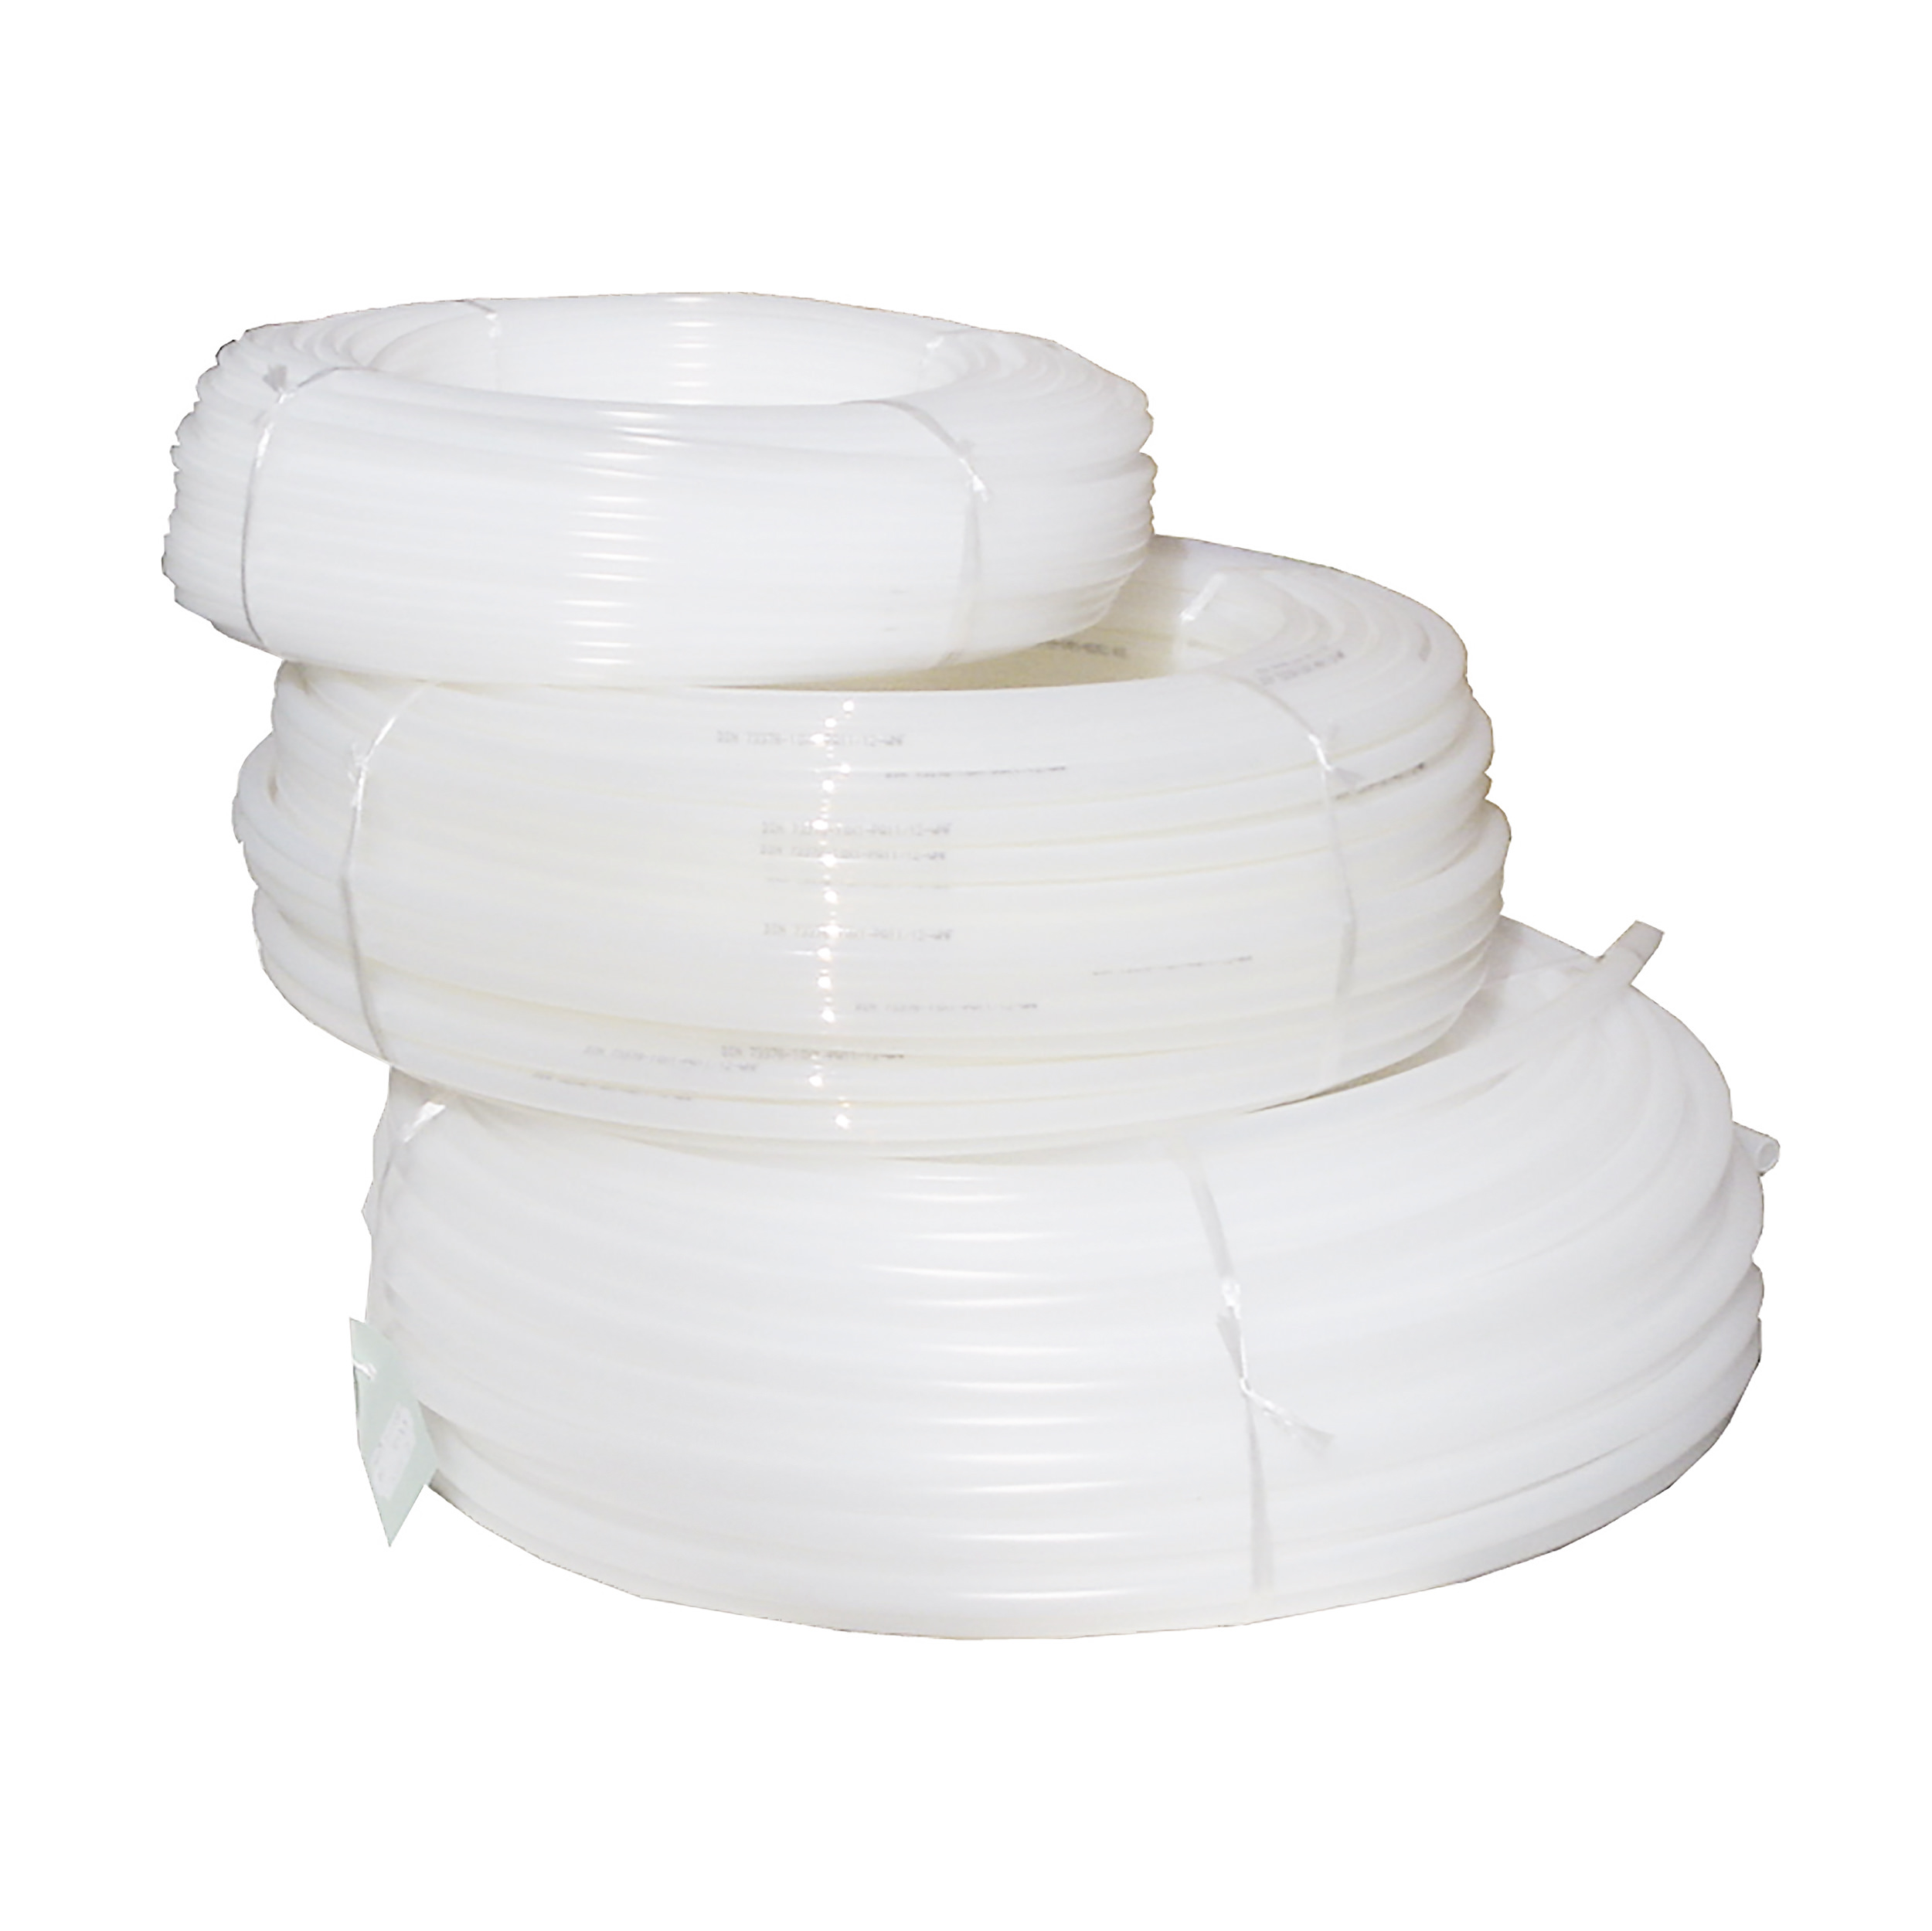 Pneumatic hose, PE, transparent, flexble, MOP at 20/40 °C: 116/58 psi, OD × ID (mm): Ø8 × 6, 50 m, full roll, no connectors